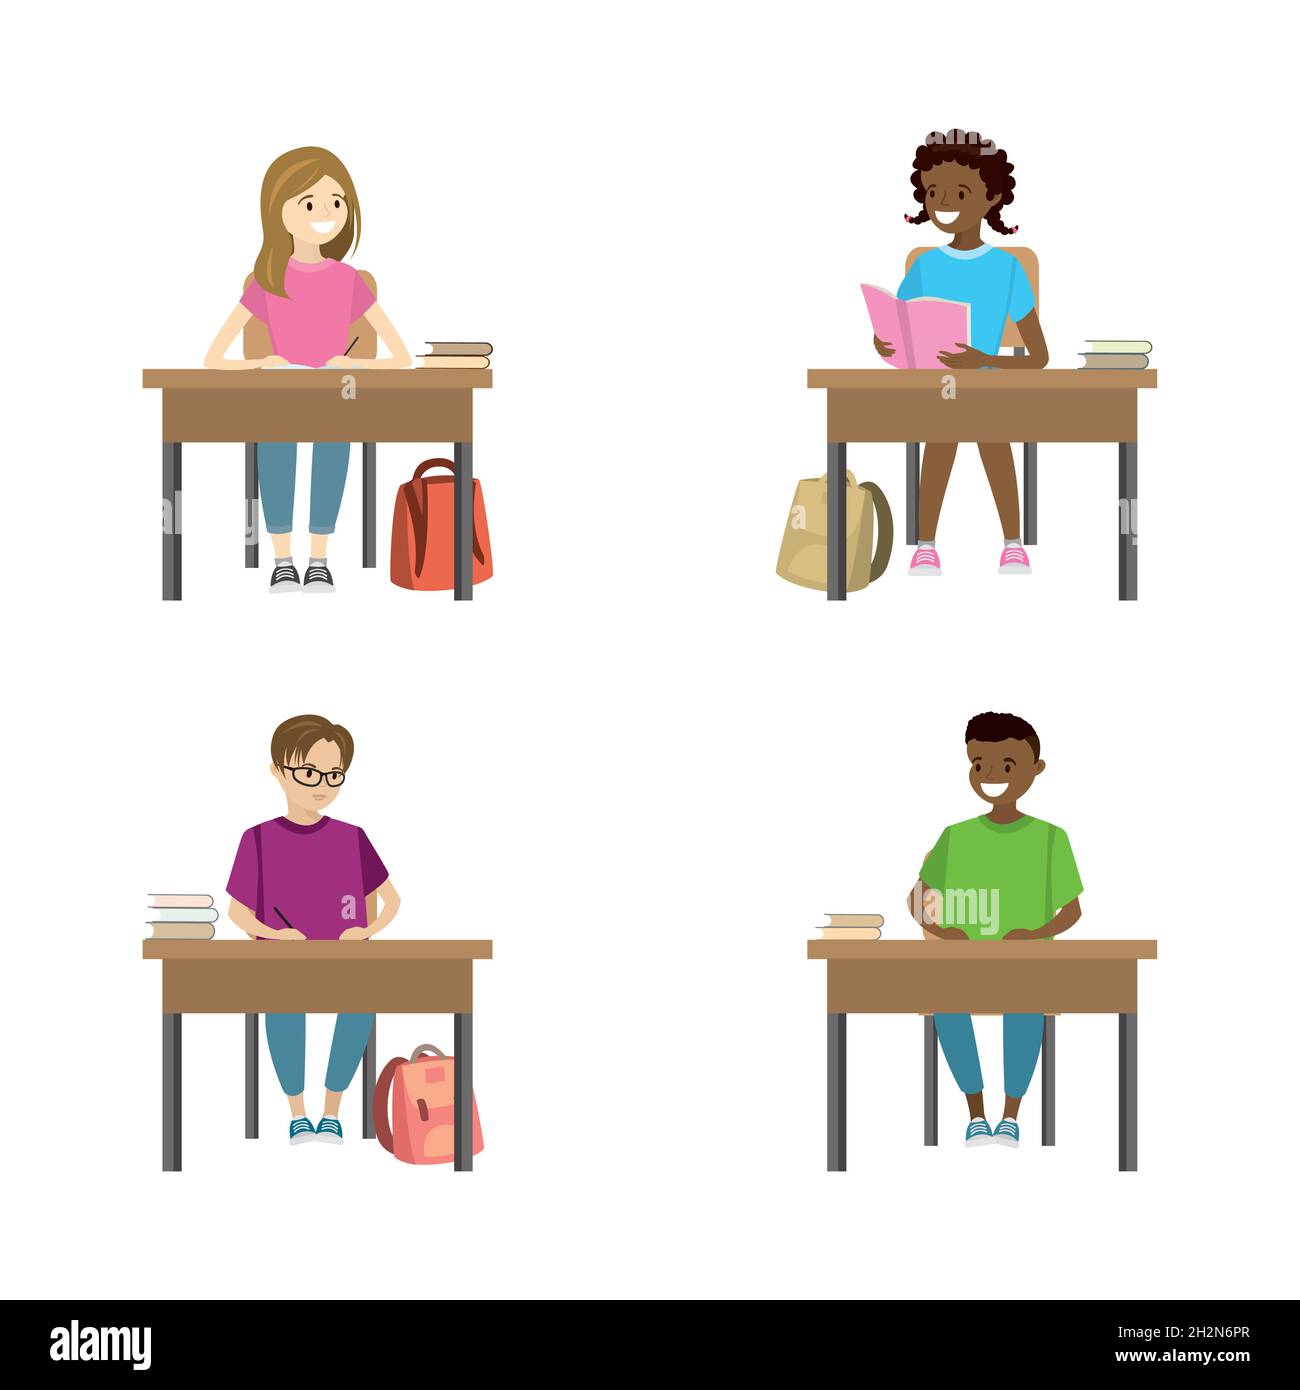 Filles et écoliers assis dans le lieu de travail vue de face, ensemble d'éducation, divers personnages masculins et féminins isolés sur fond blanc, vue plate Illustration de Vecteur